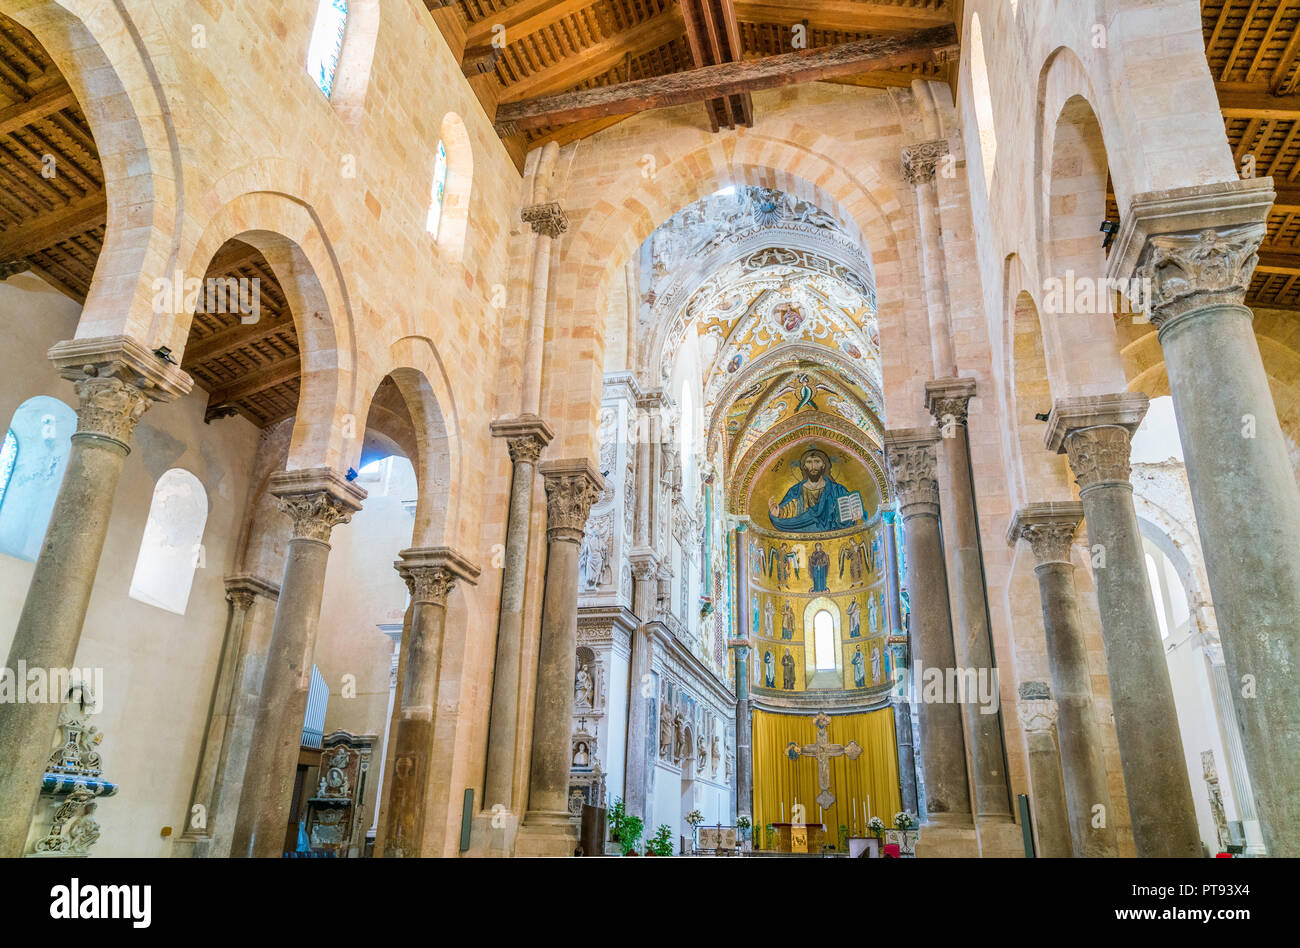 Einen Blick in die beeindruckende Kathedrale von Cefalù. Sizilien, Süditalien. Stockfoto